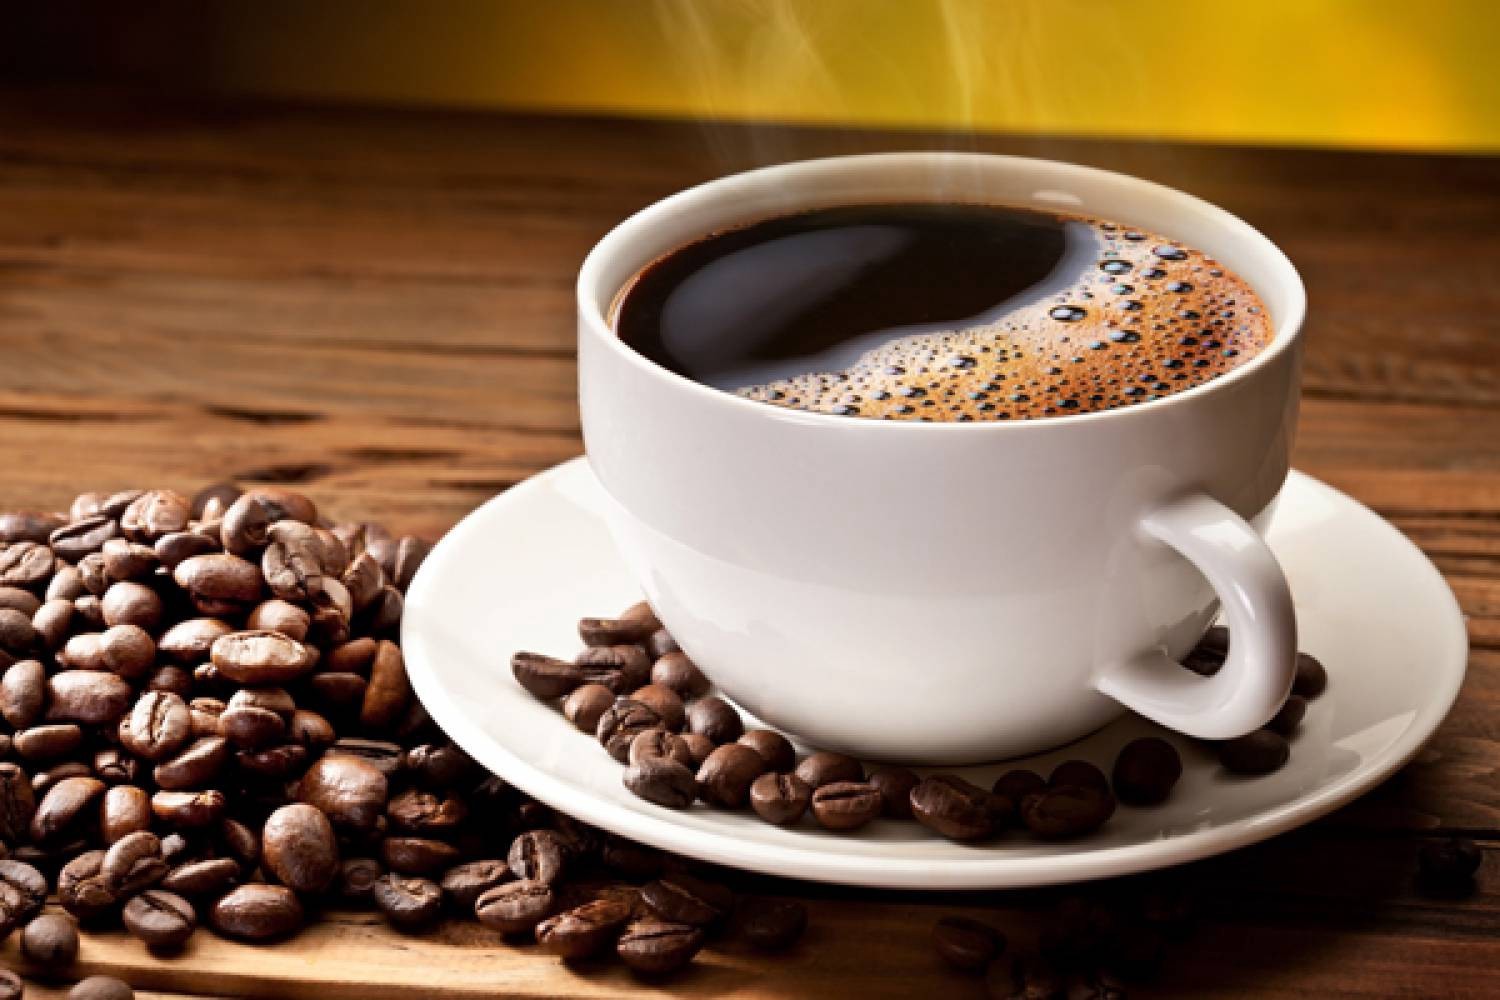 Як вибрати каву в зернах або розчинну: корисні лайфхаки